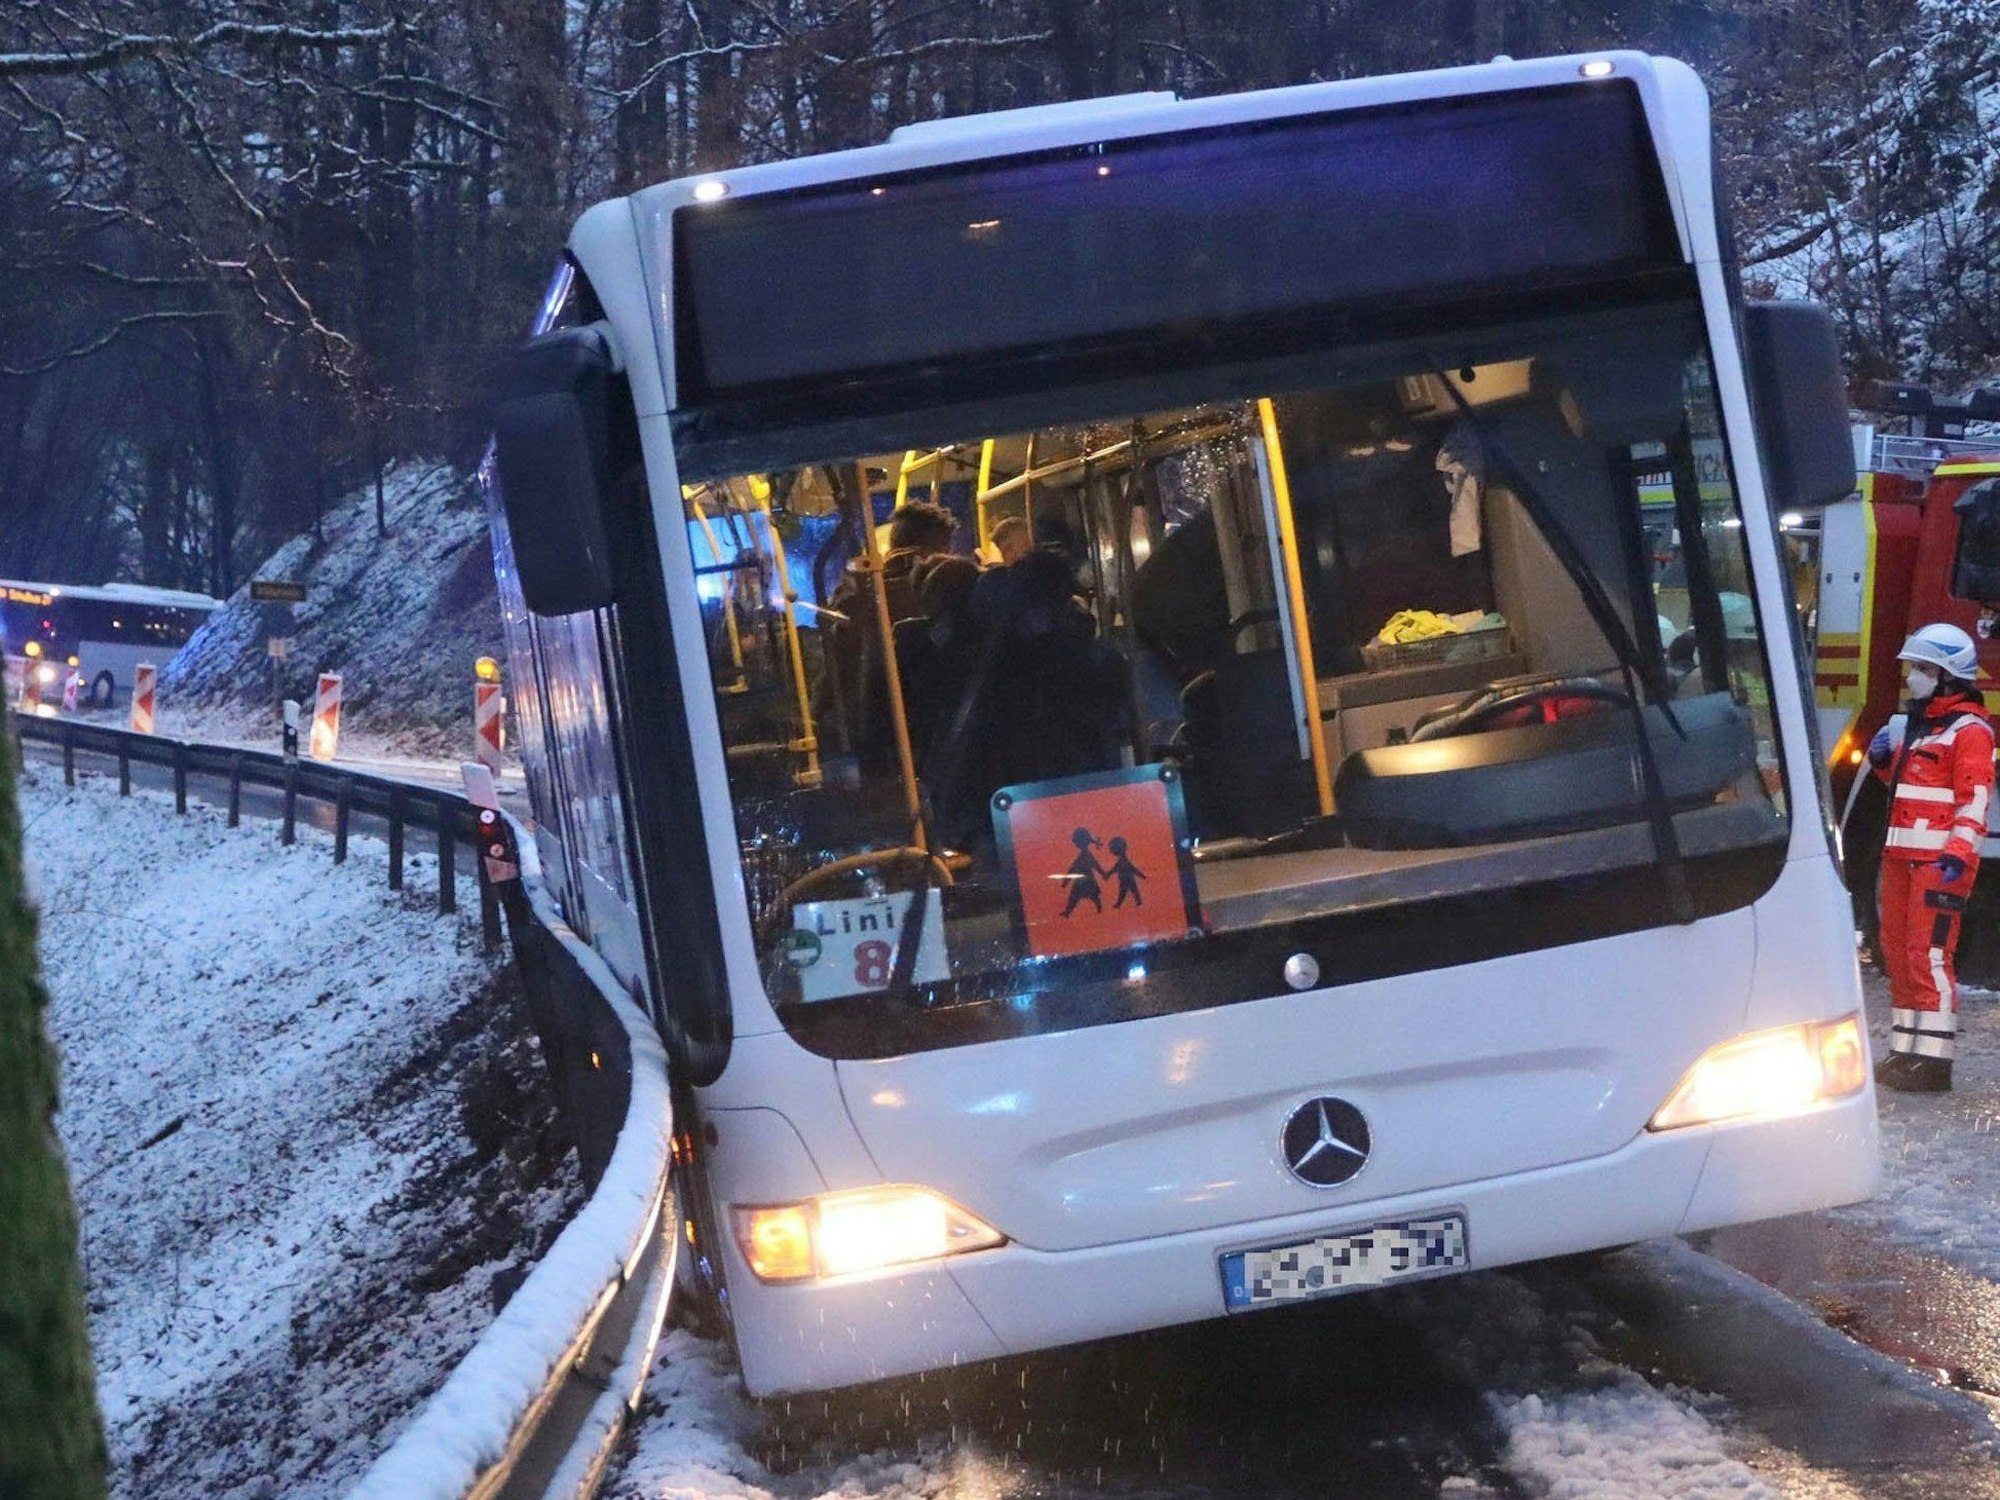 Ein Schulbus ist auf einer mit Schneematsch bedeckten Straße in die Leitplanke gerutscht.